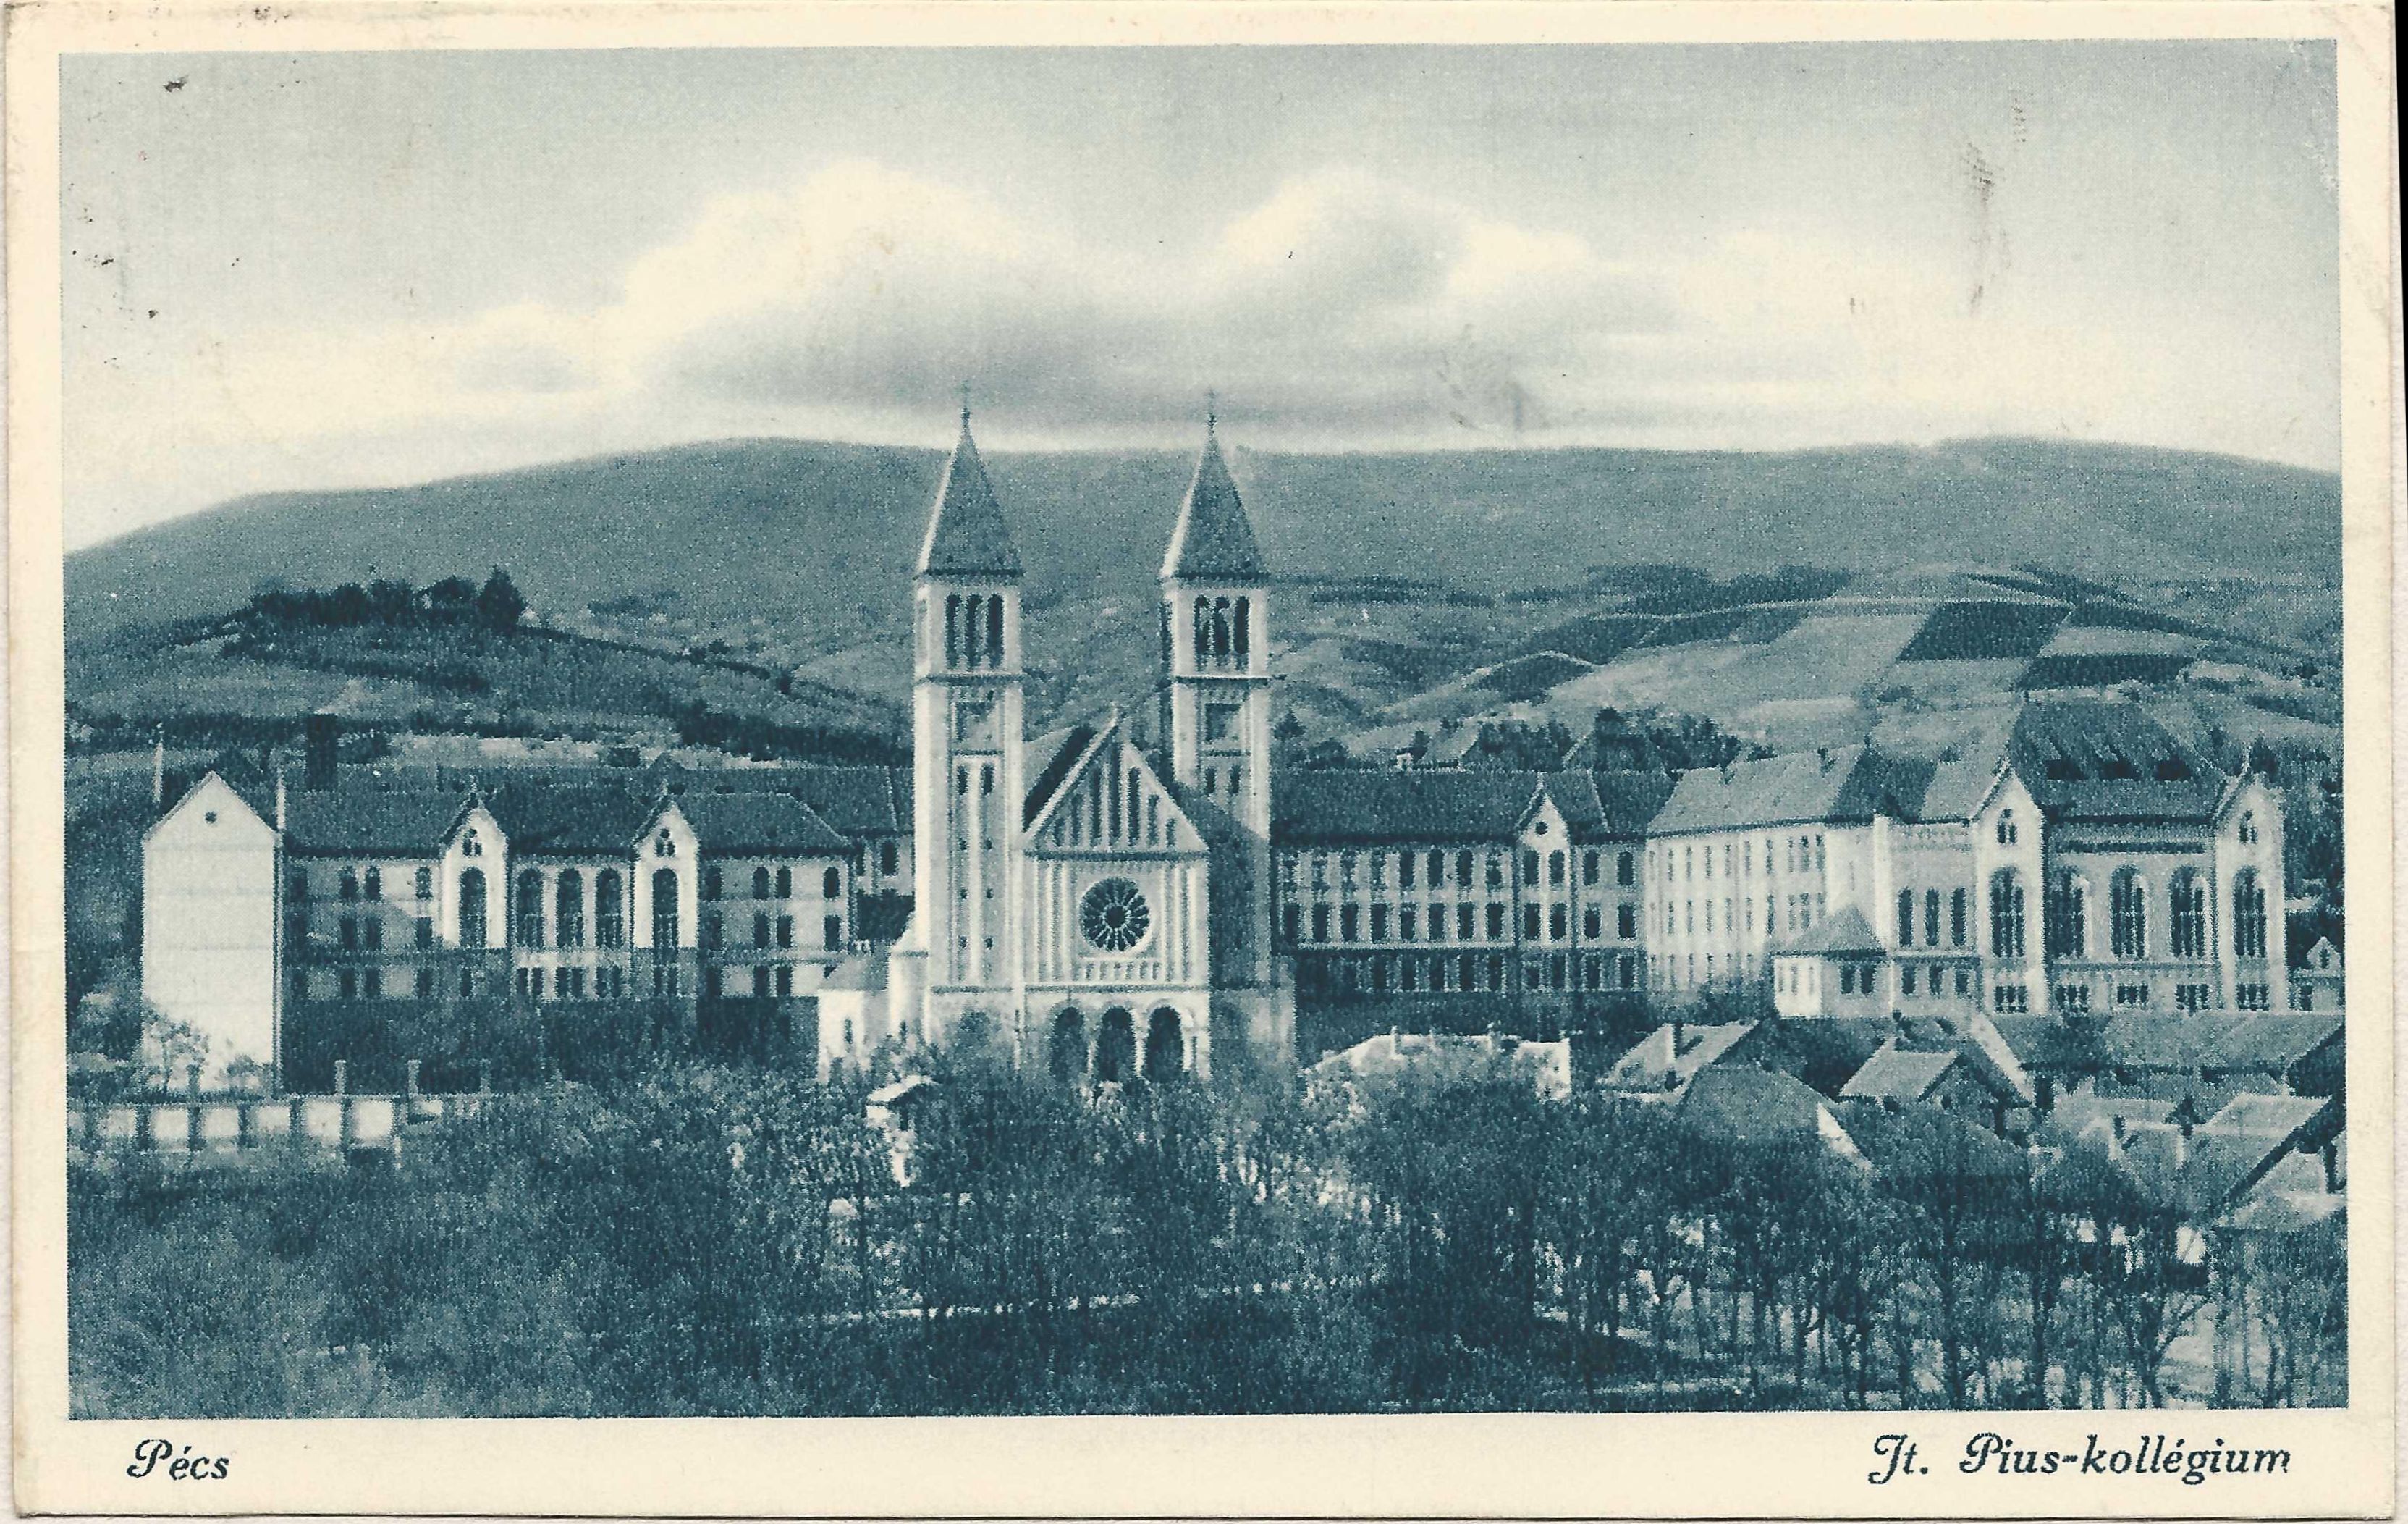 Pécs Jt. Pius-Kollégium